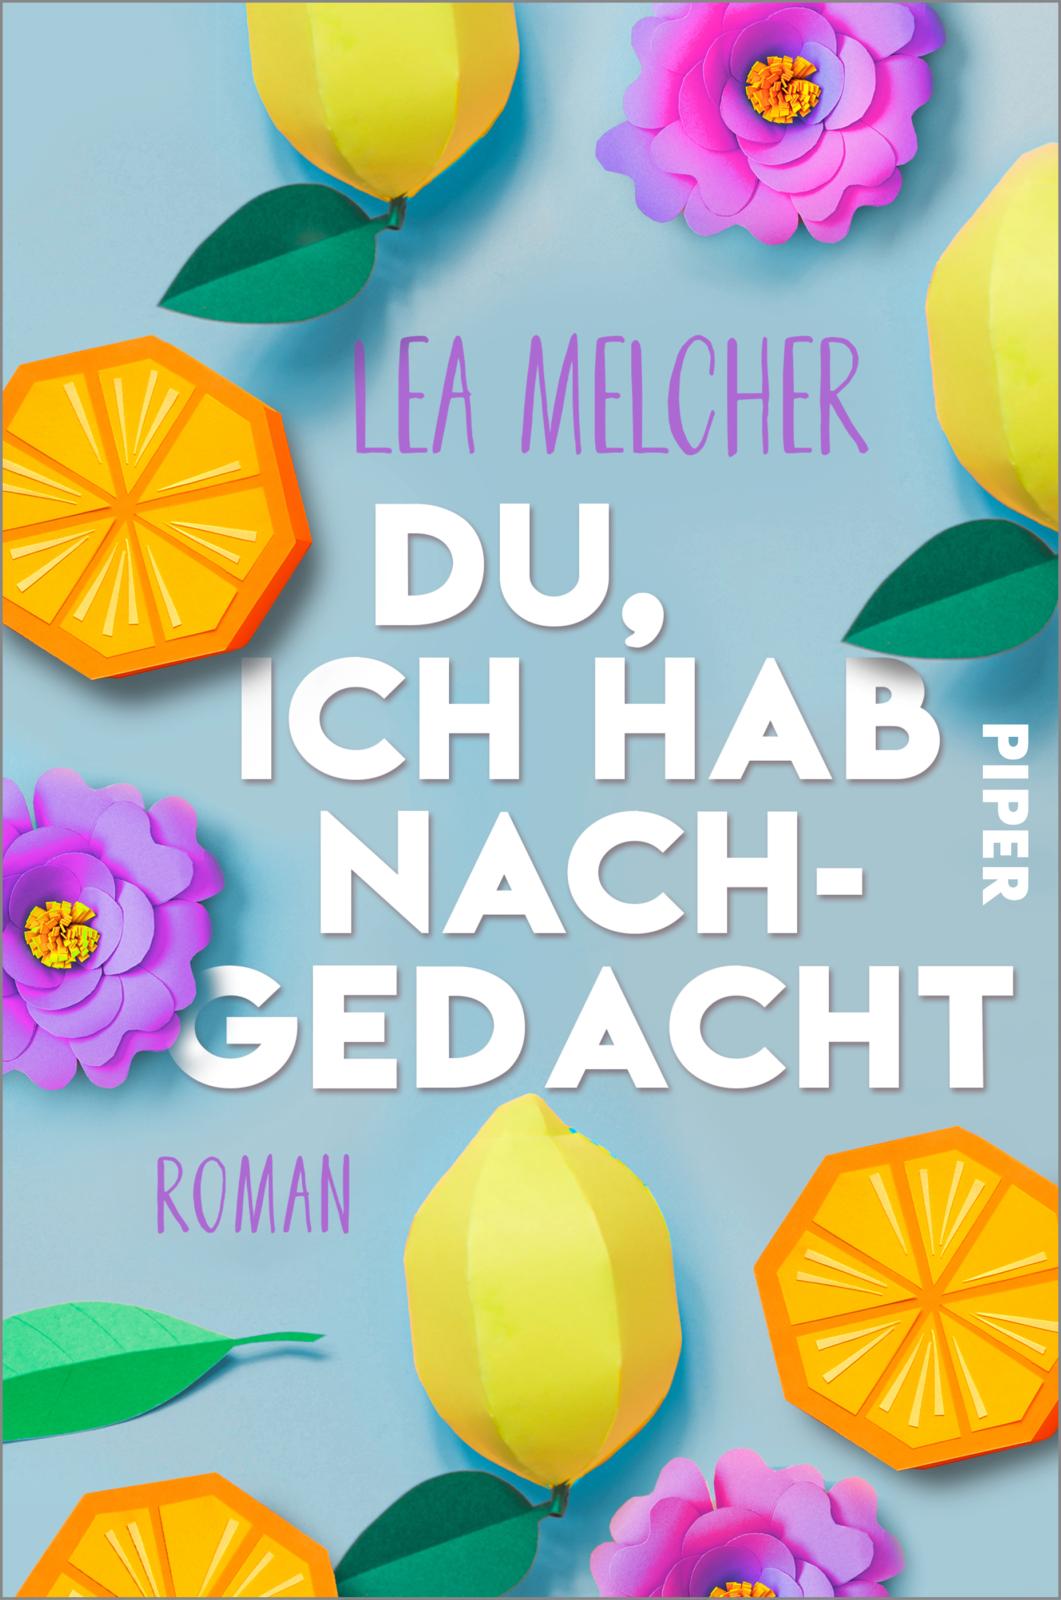 Lea Melcher - Du, ich hab nachgedacht